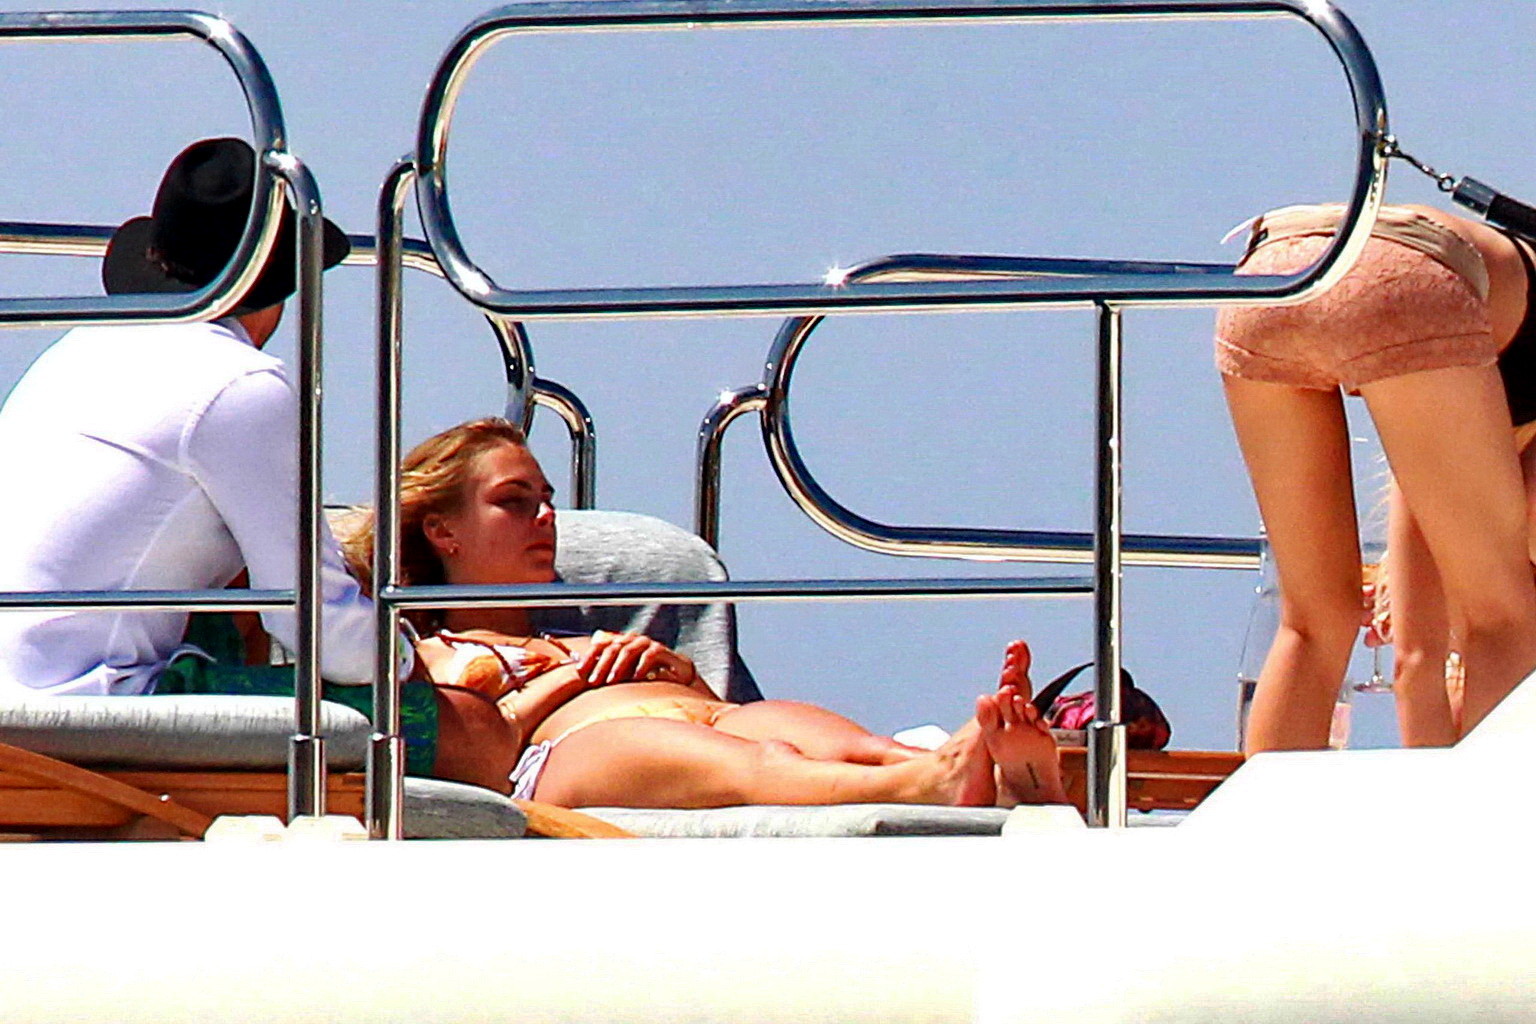 Cara Delevingne wearing a bikini on a yacht in Ibiza #75188715